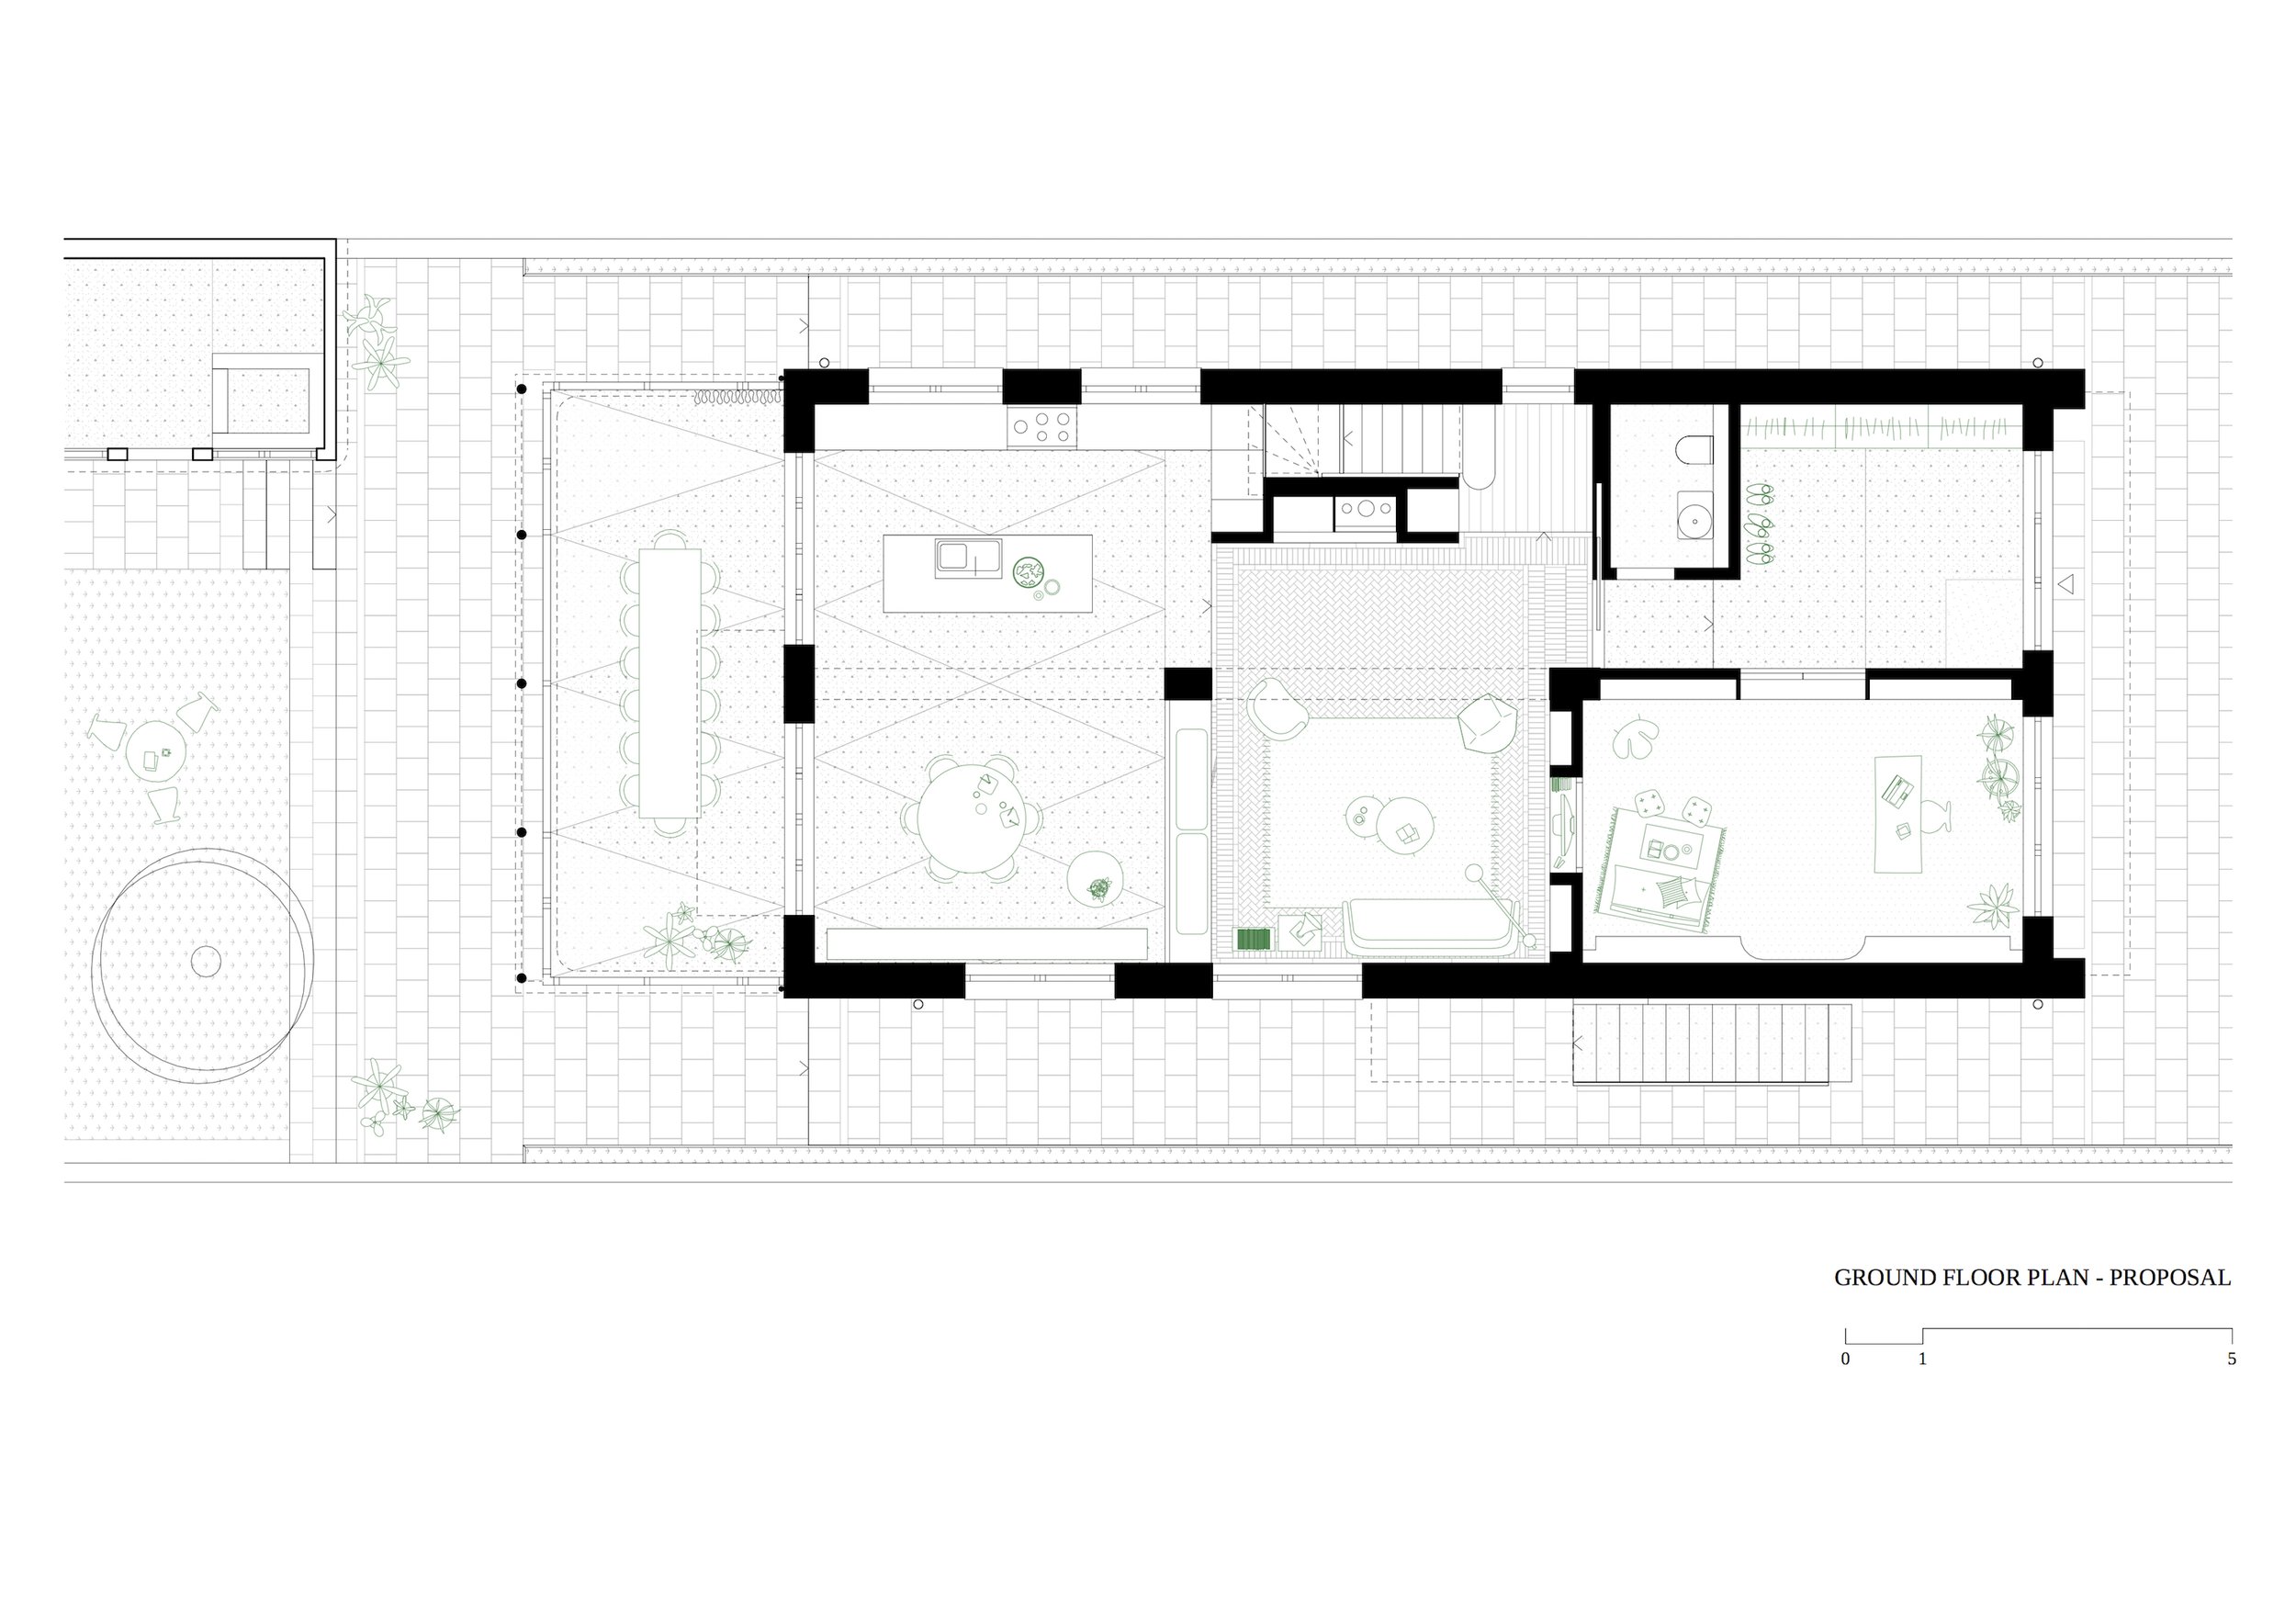 OITOO_OLIDOURO_Ground Floor Plan_Proposal.jpg